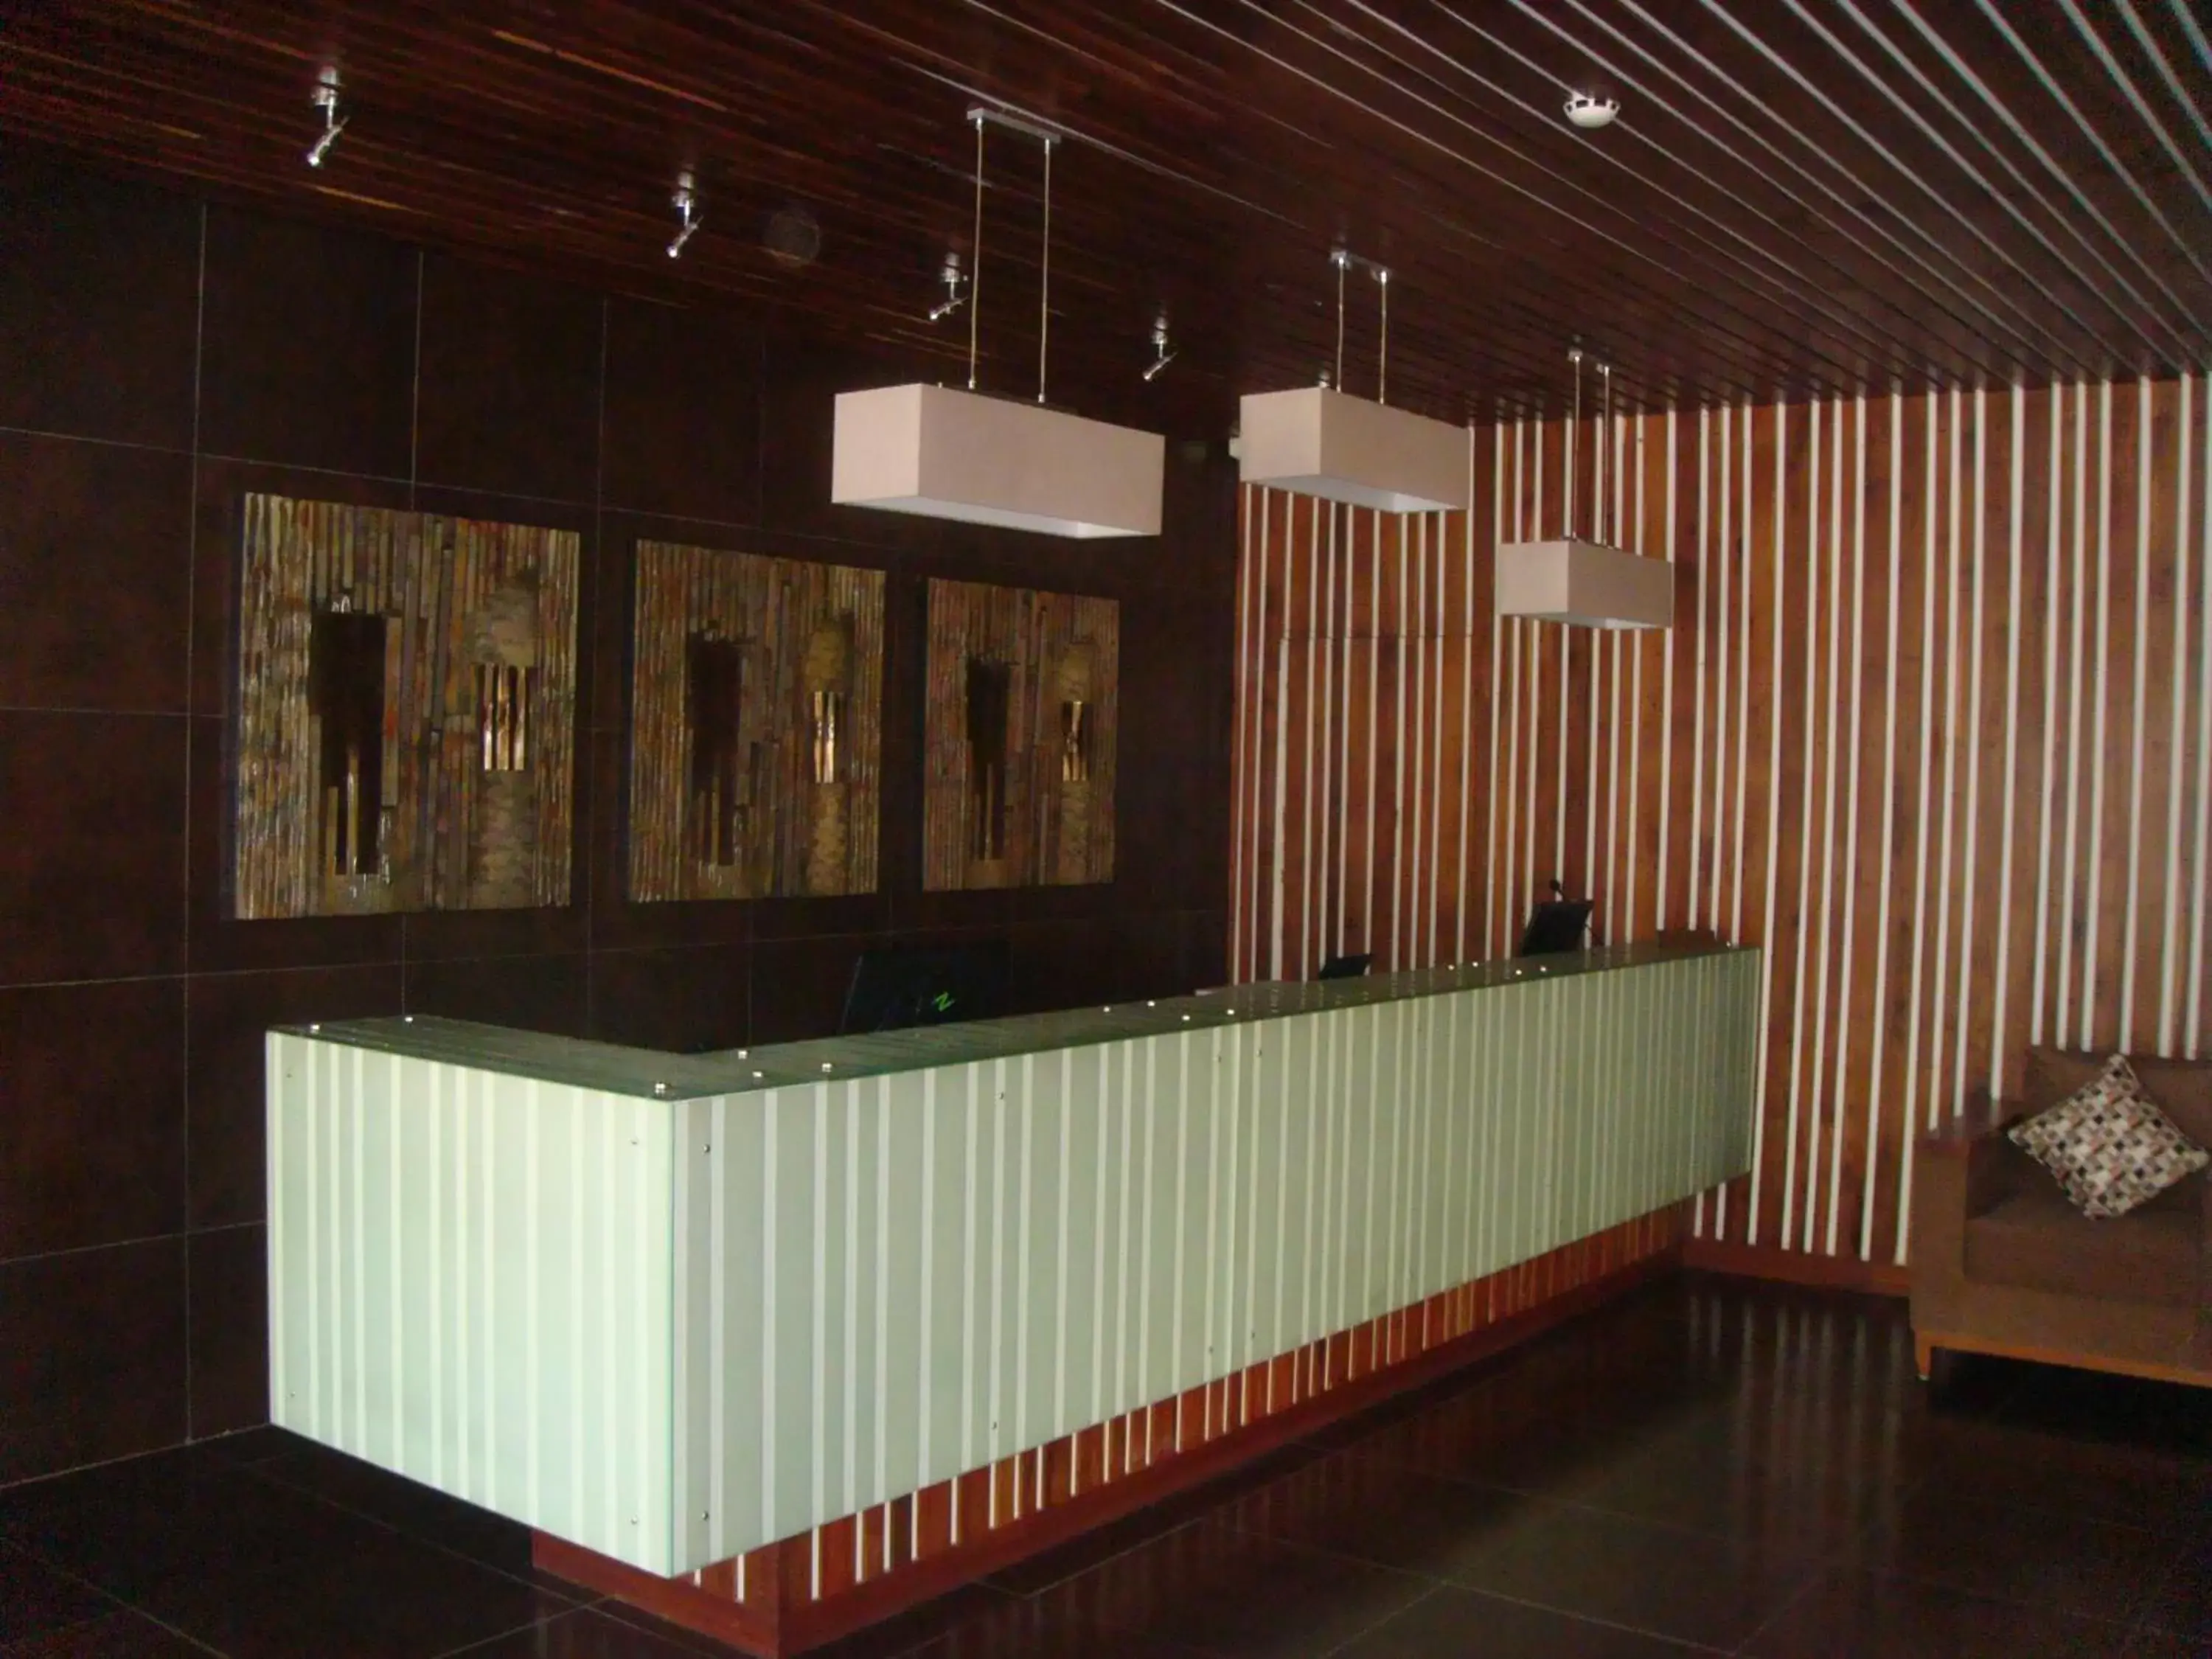 Lobby or reception, Lobby/Reception in Venus Premier Hotel